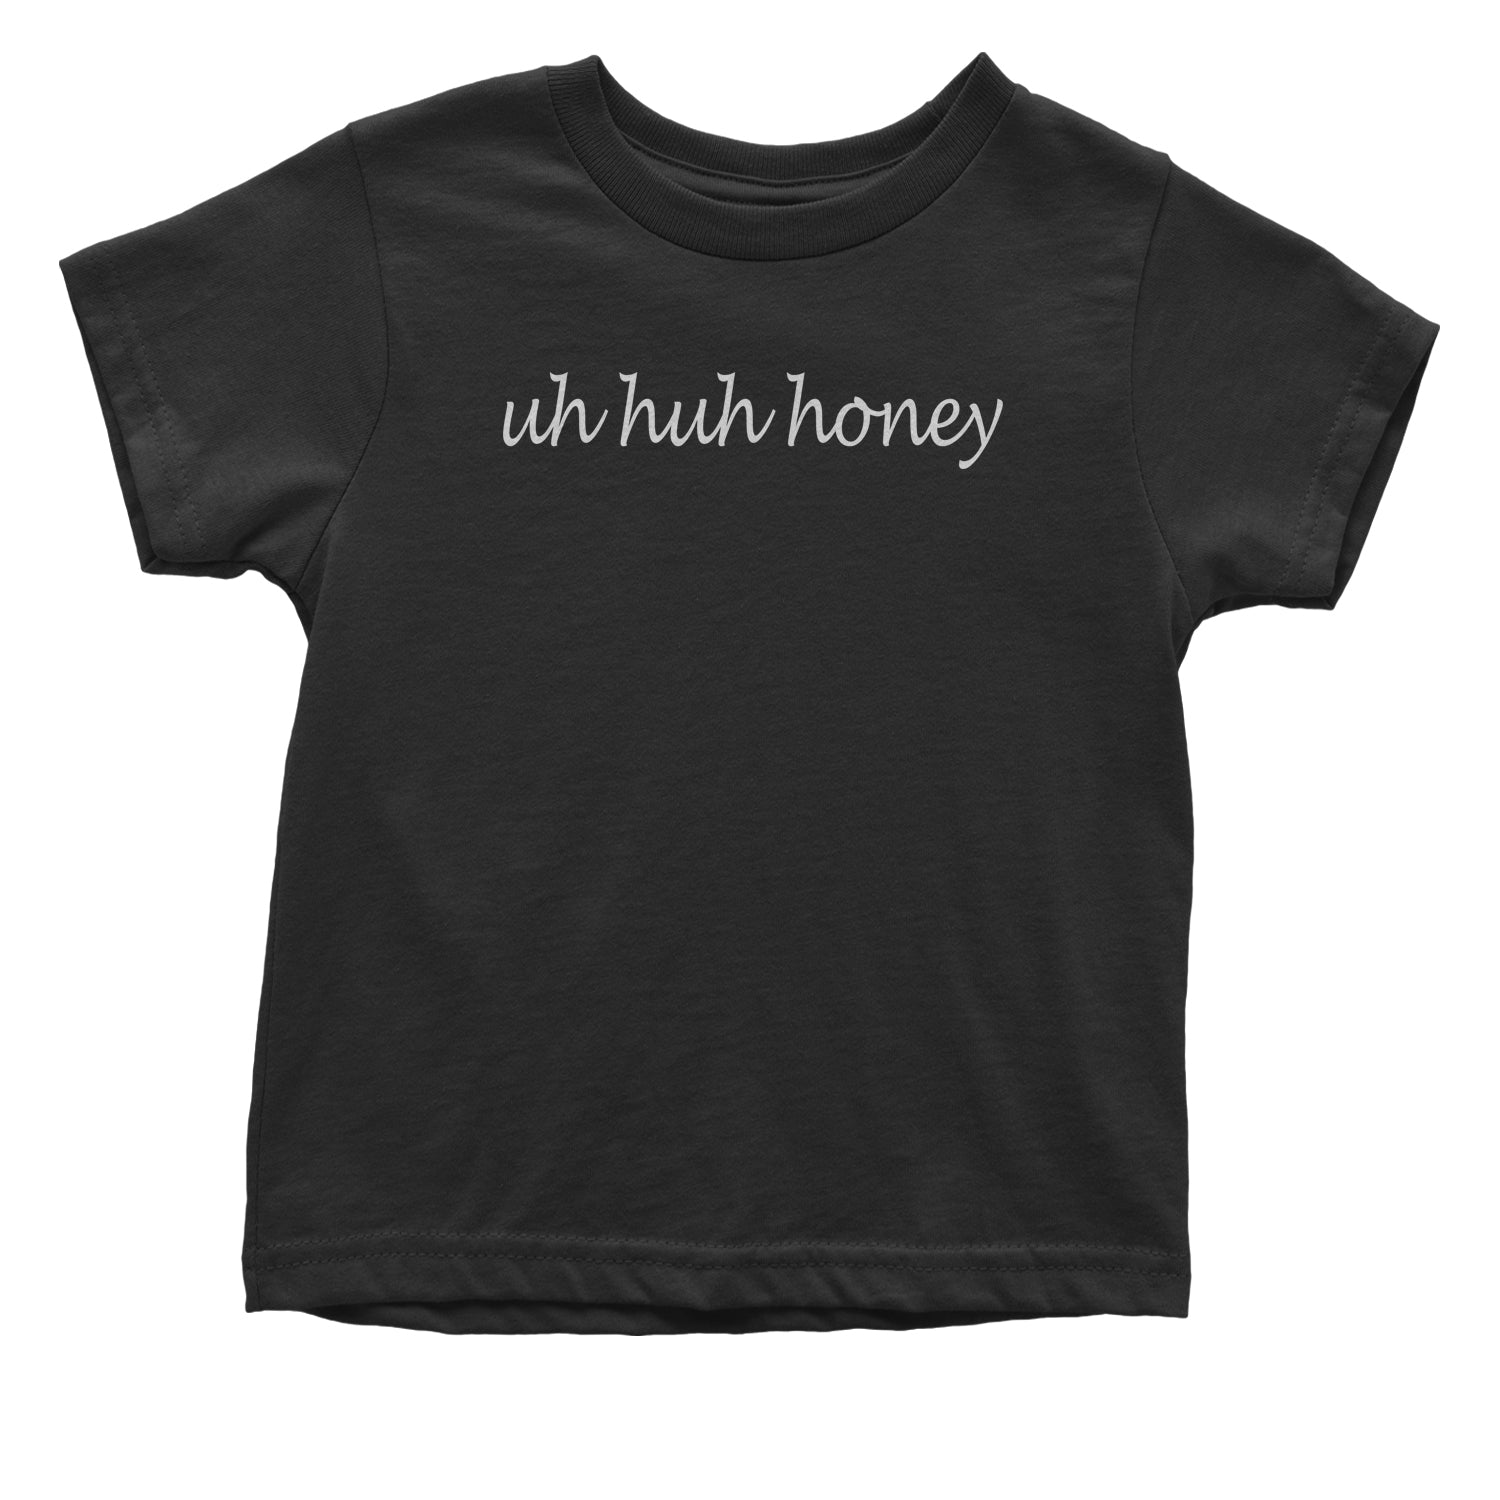 Uh Huh Honey Toddler T-Shirt uhhuh, uhuh, unhunh by Expression Tees